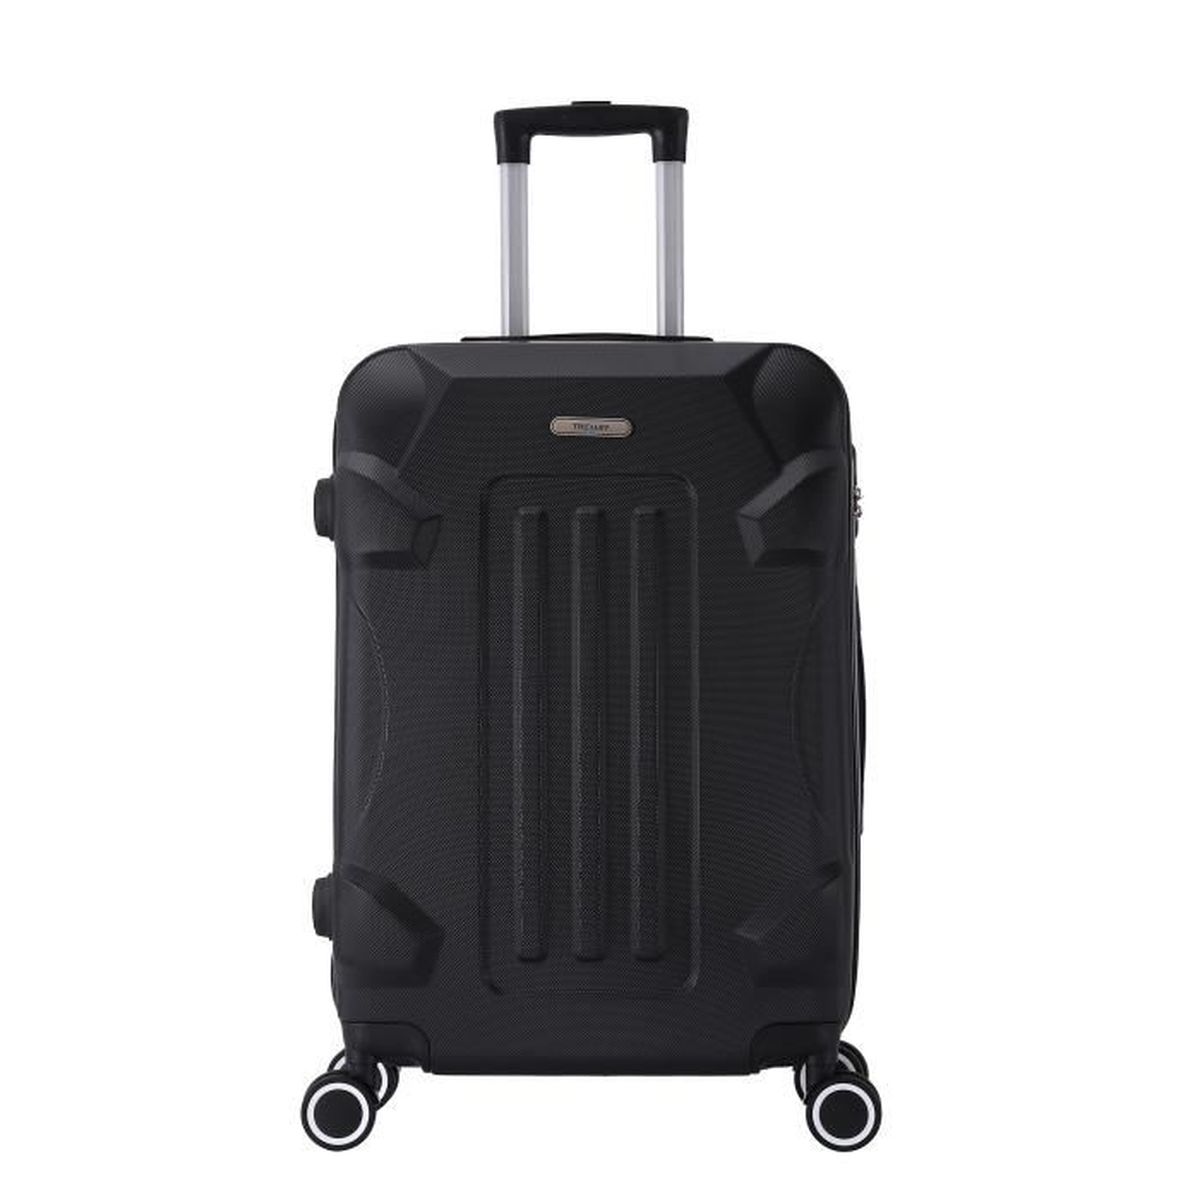 ABS Monzana ® Voyage valise coque rigide valise set 4 roulettes trolley choix de couleur PC 